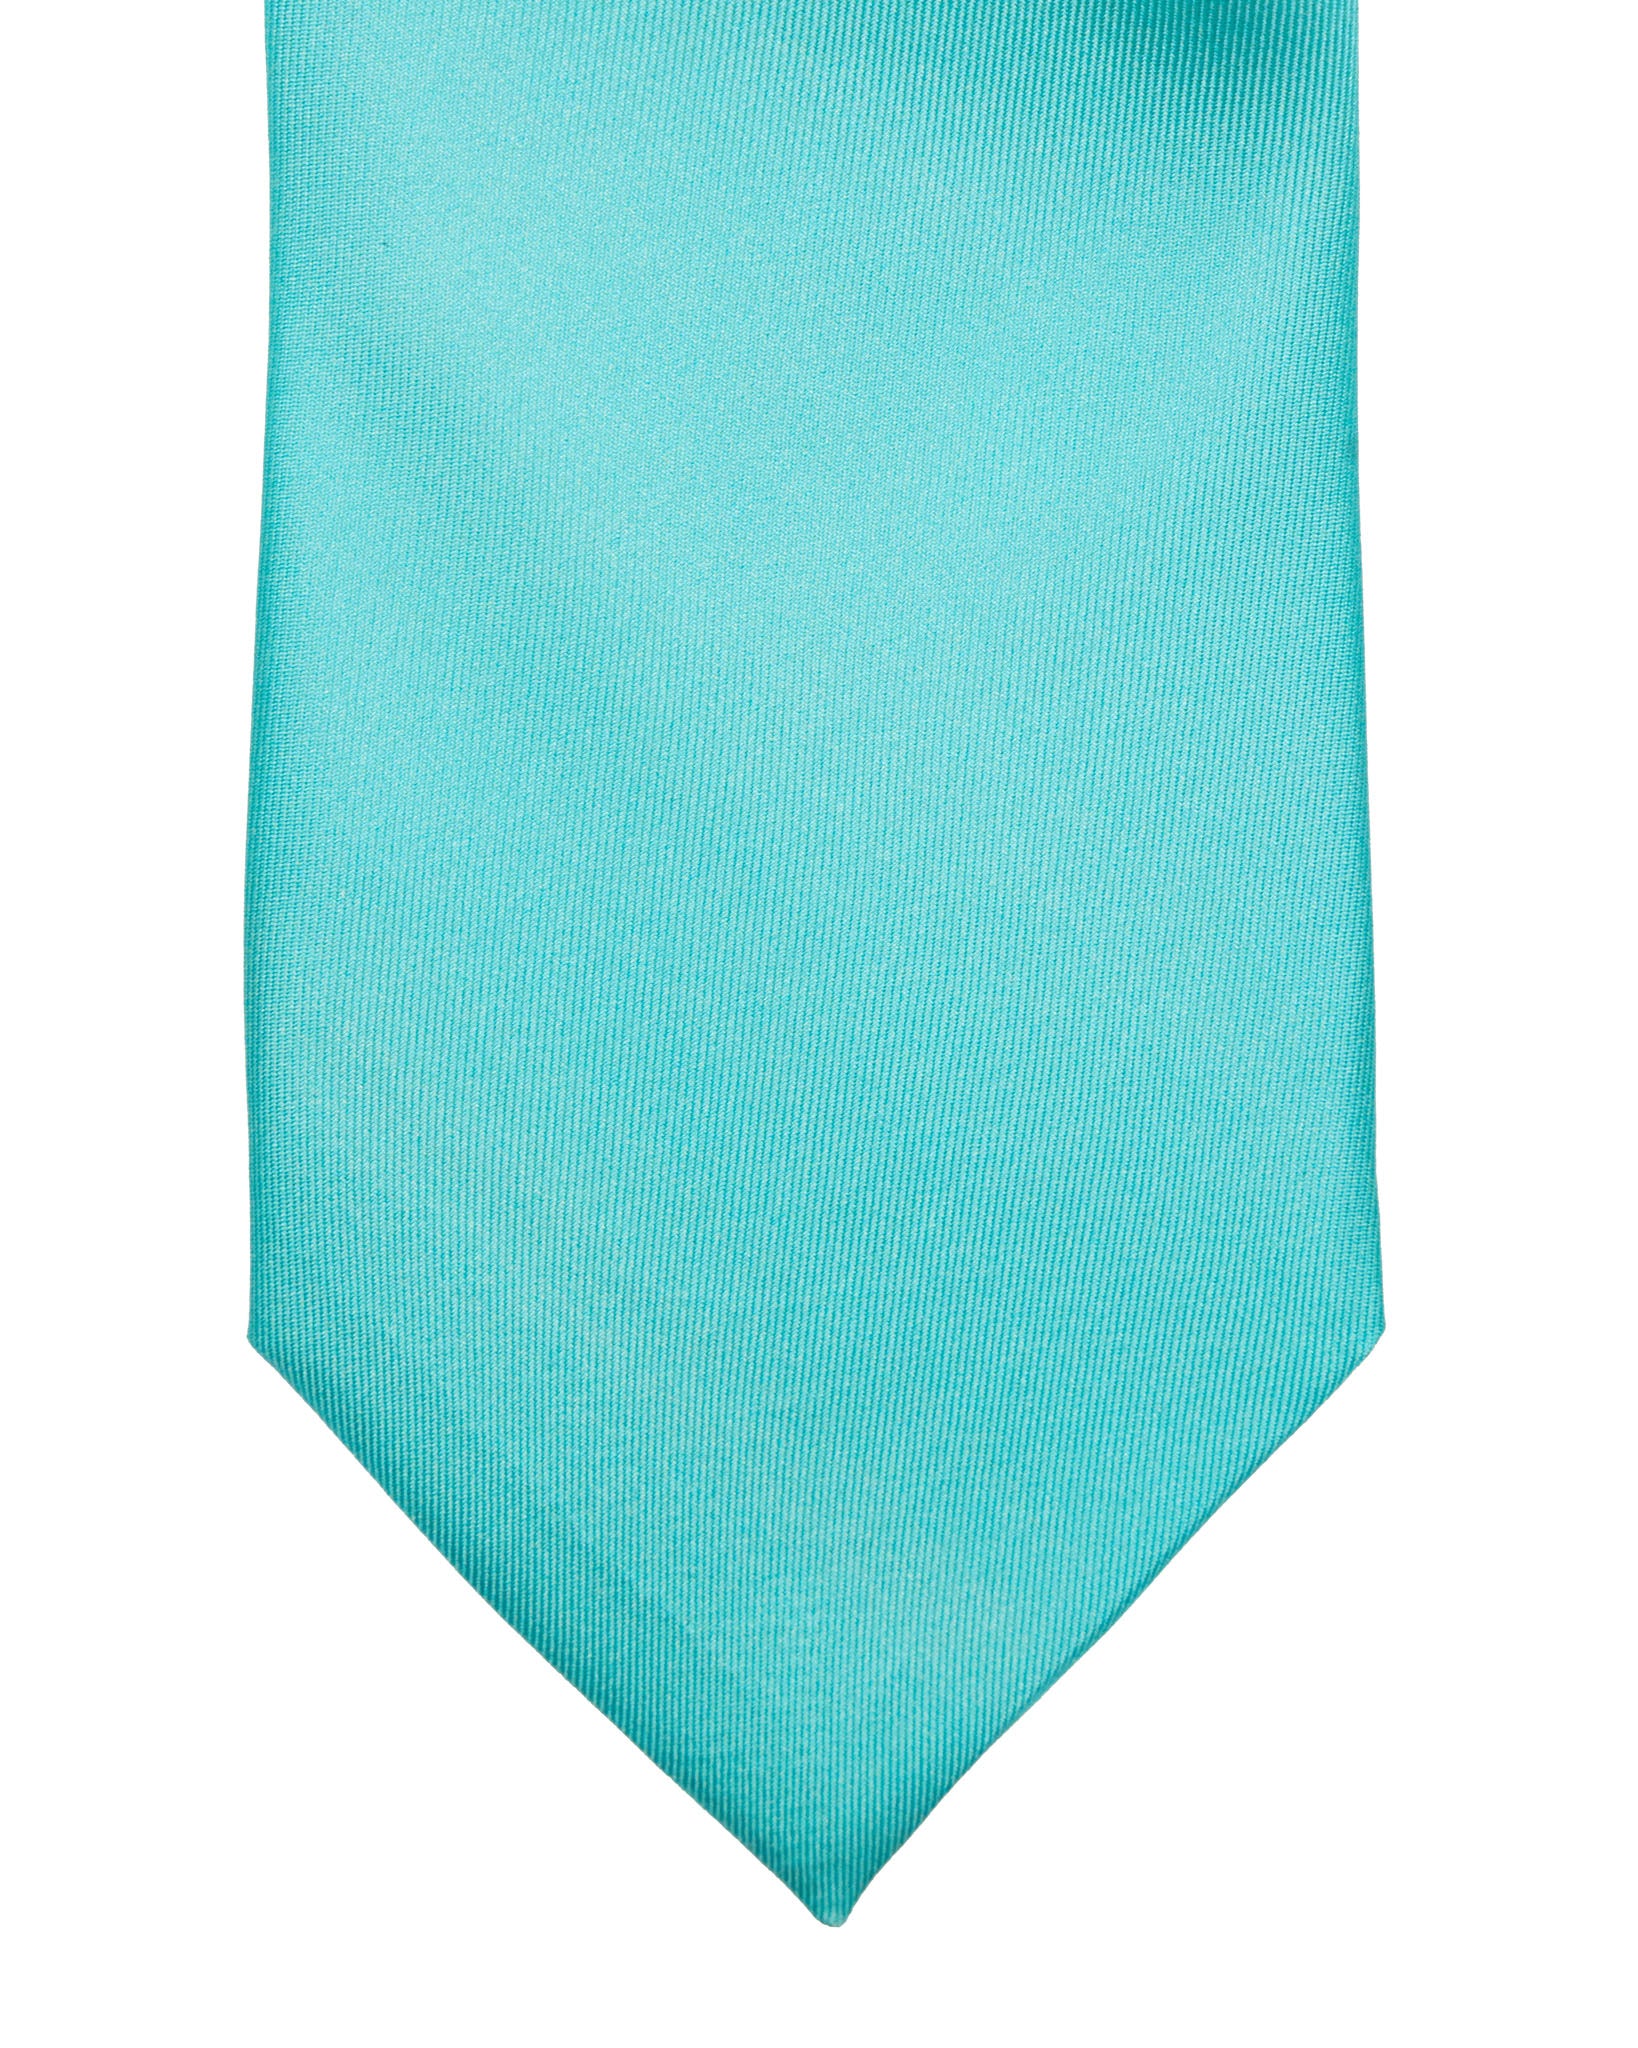 Cravate - en soie tissée turquoise